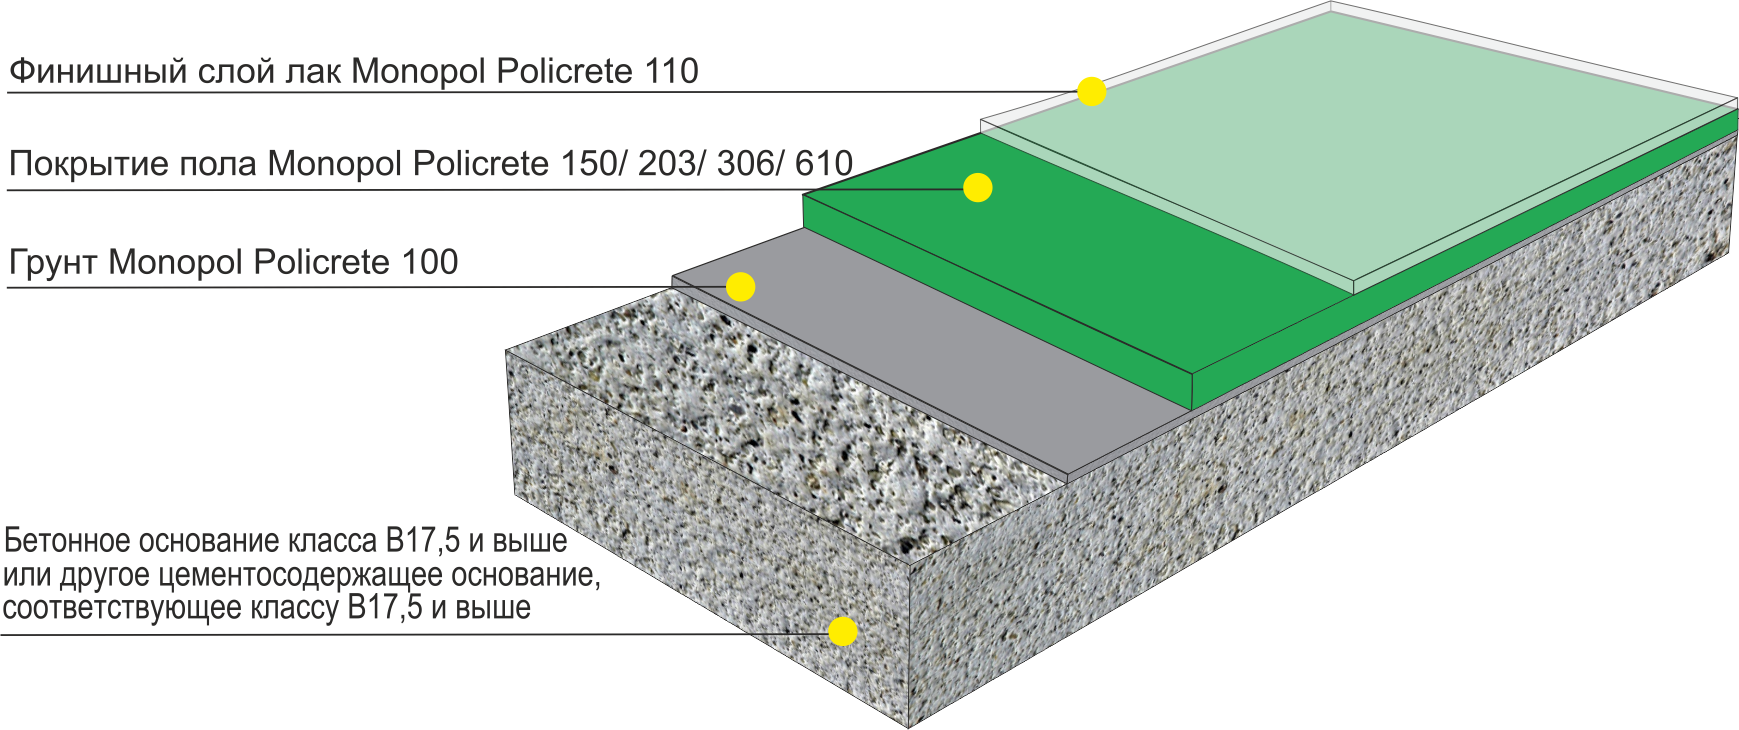 Полы промышленные бетонные: разновидности